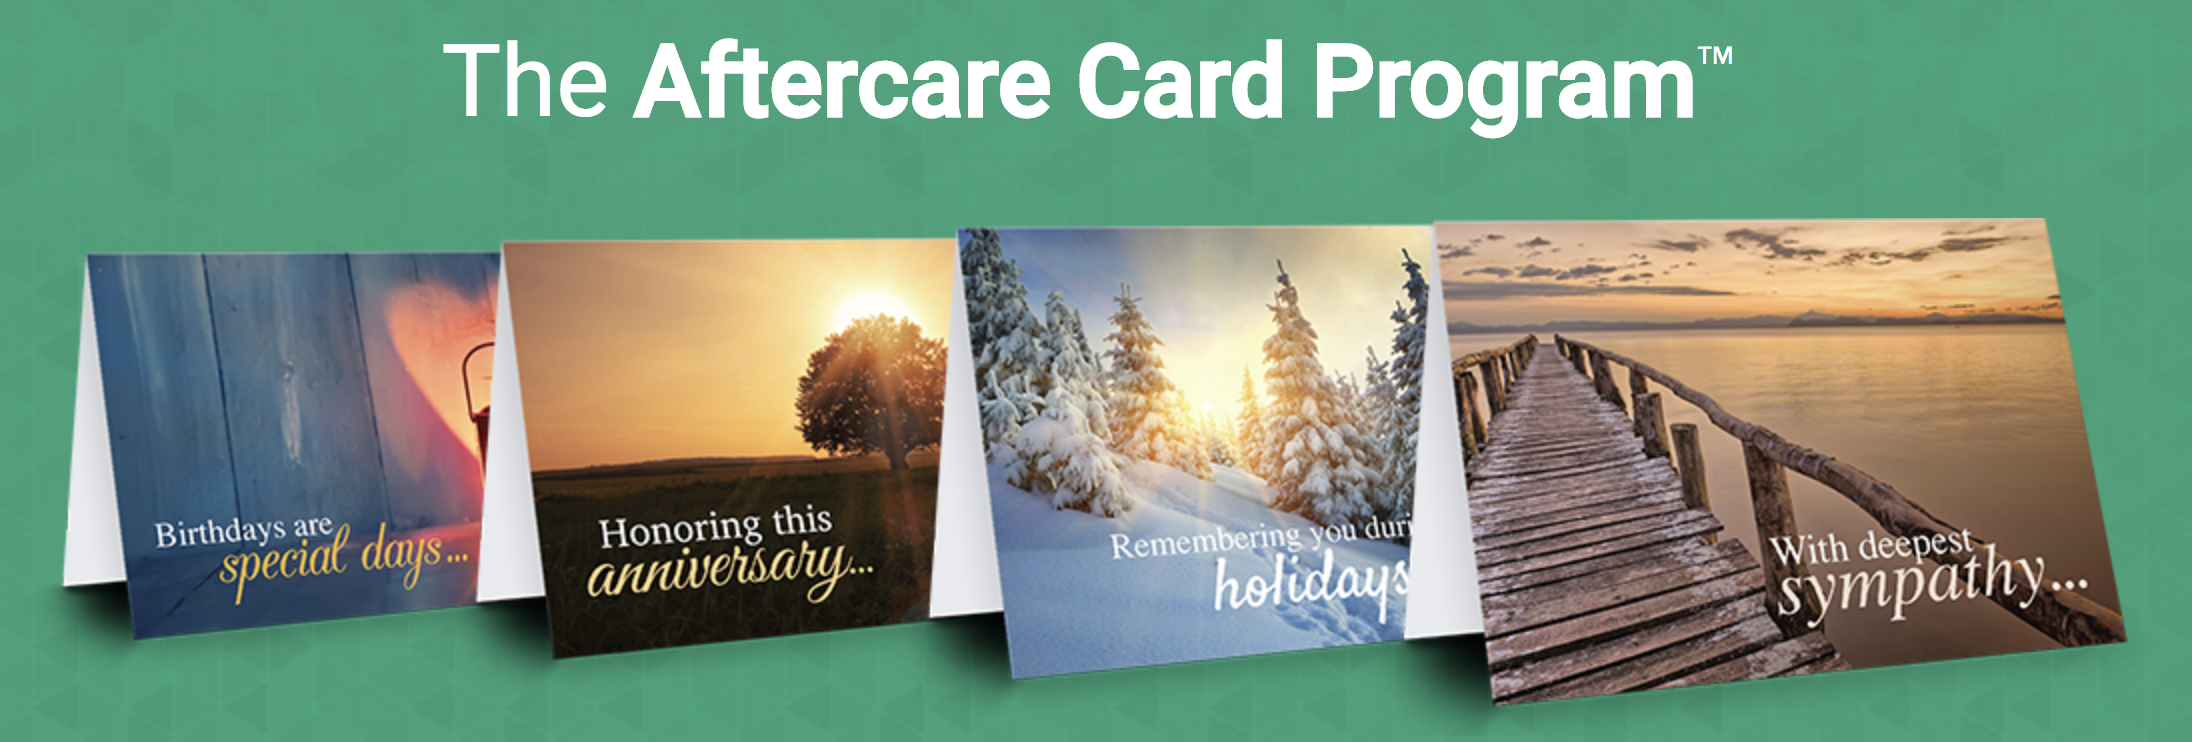 Aftercare.com Card Program